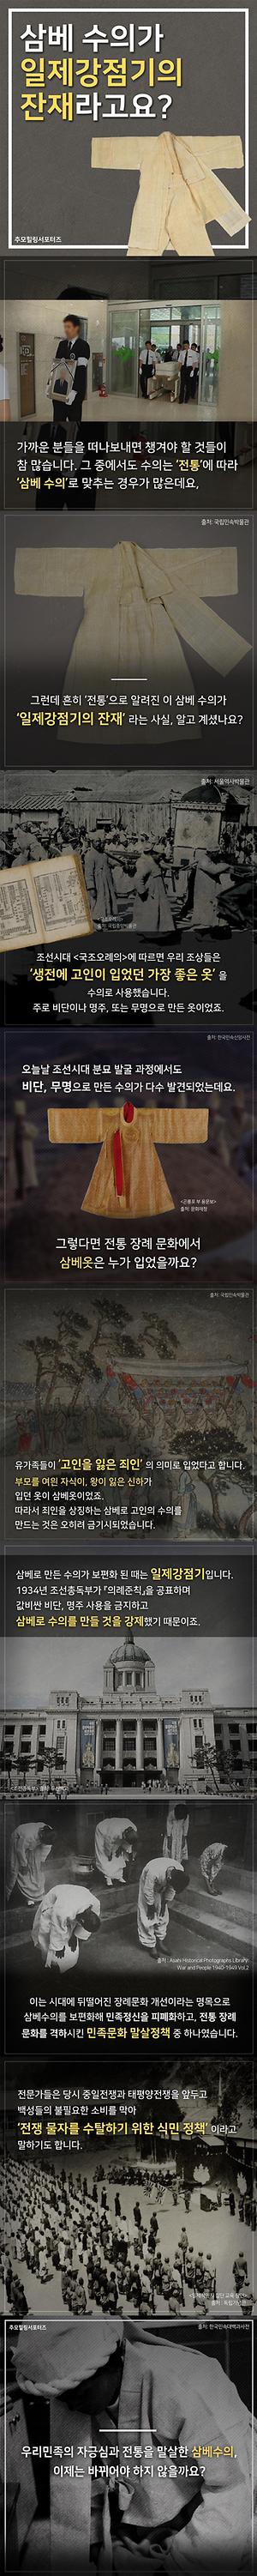 [카드뉴스] '삼베 수의가 일제강점기의 잔재라고요?' 사진